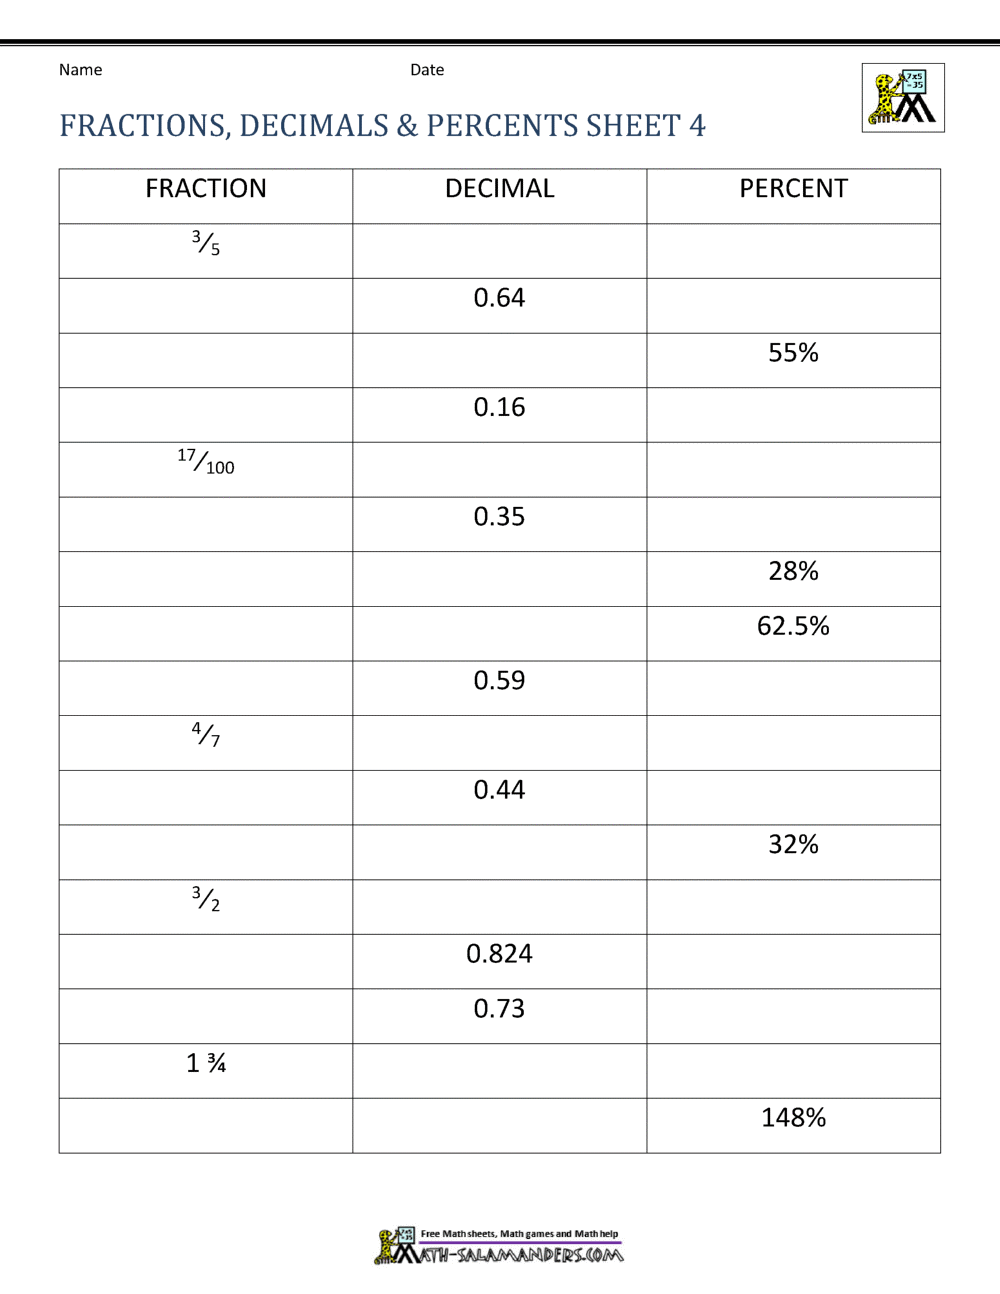 Fractions Decimals Percents Worksheets Throughout Comparing Fractions And Decimals Worksheet